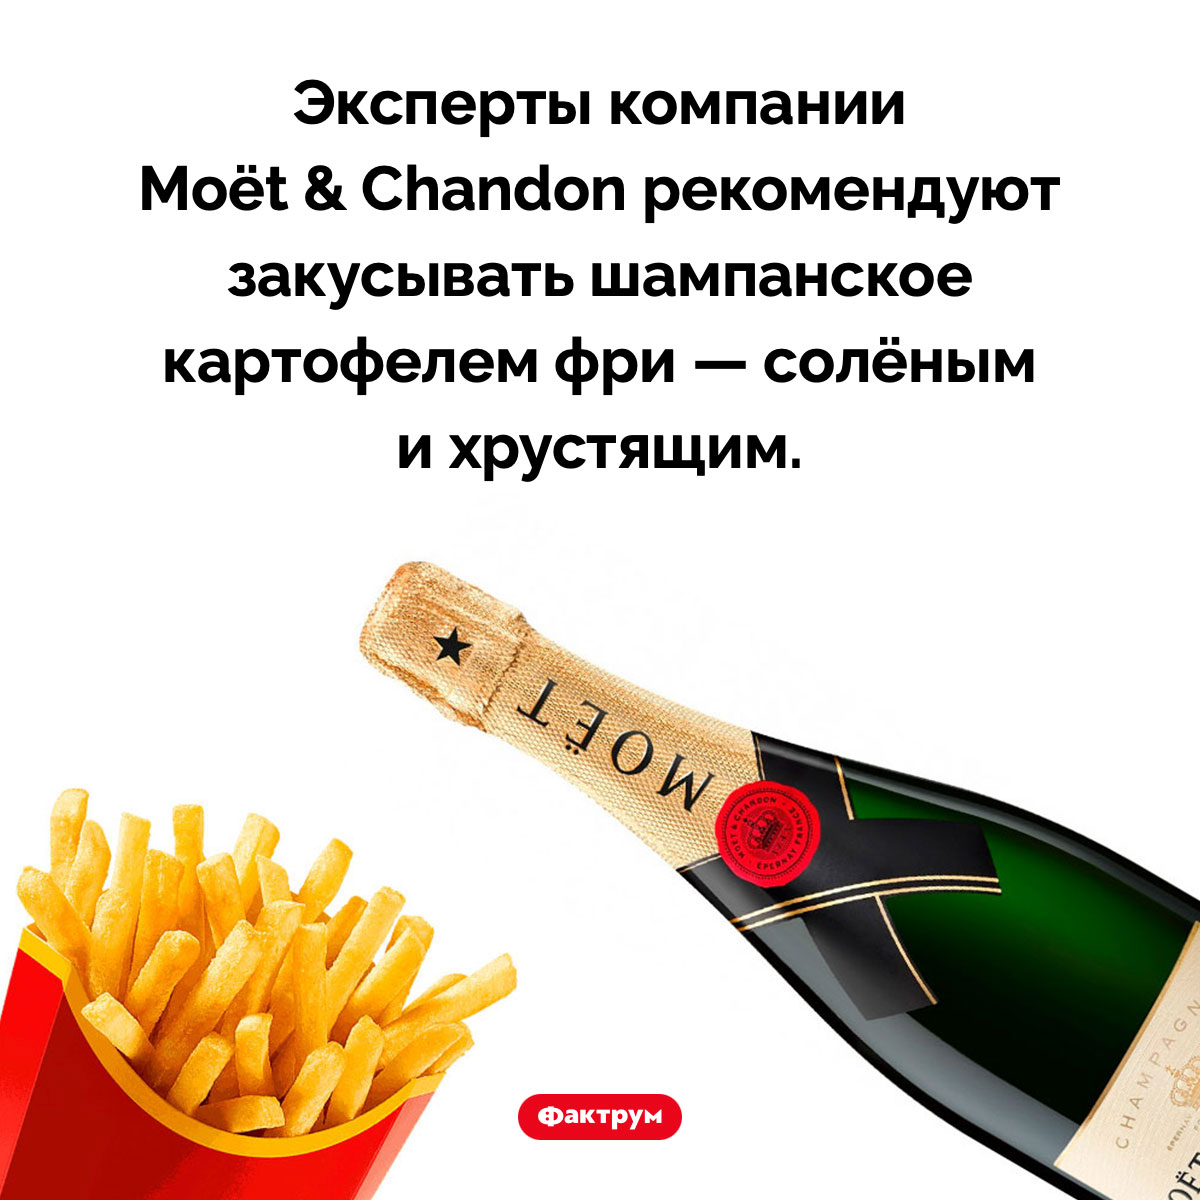 Чем закусывать шампанское. Эксперты компании Moët & Chandon рекомендуют закусывать шампанское картофелем фри — солёным и хрустящим.